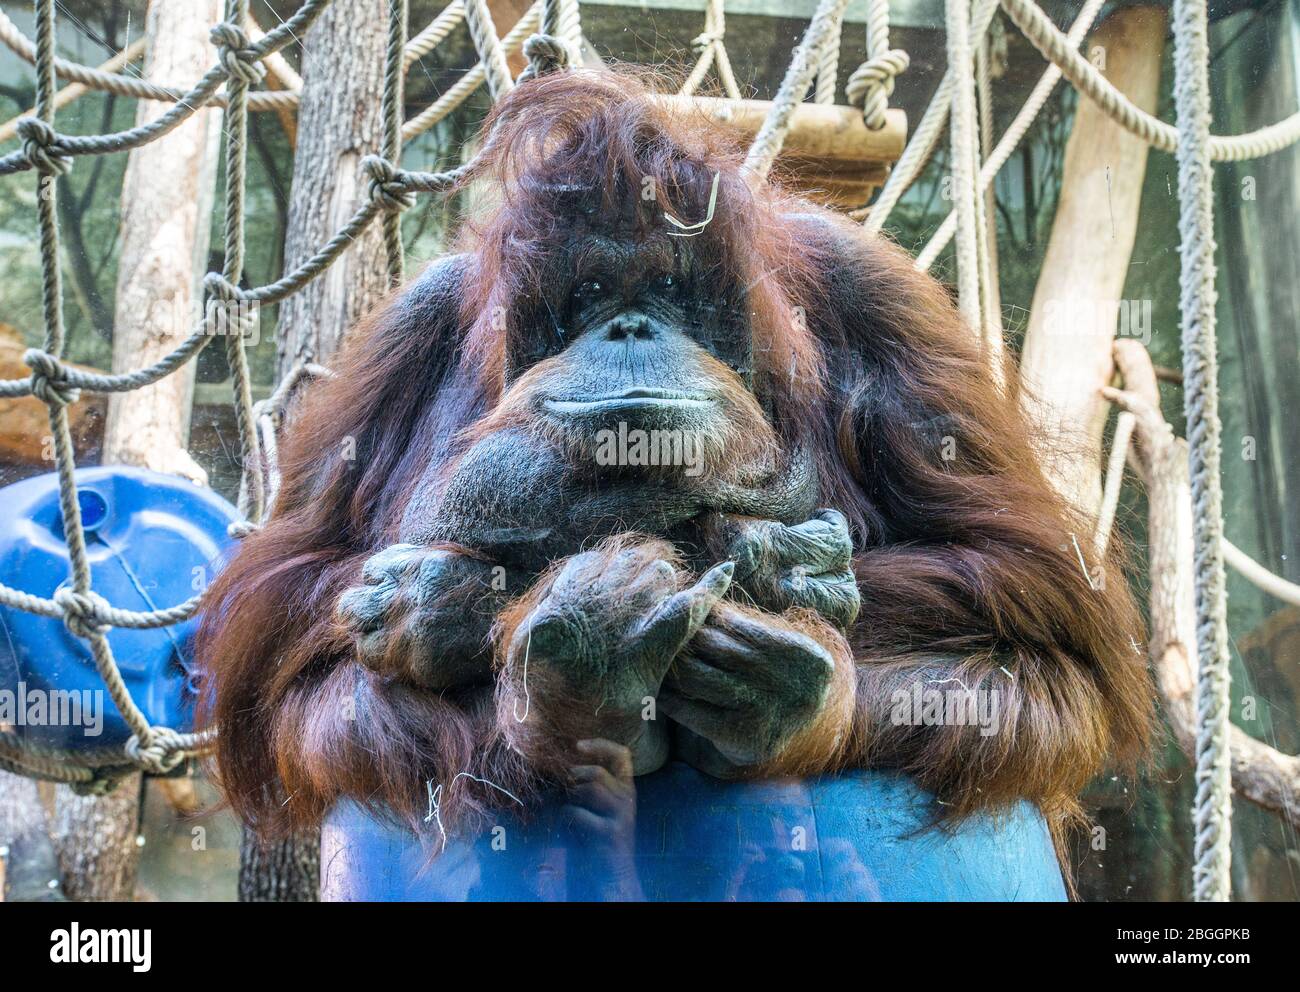 Orangutan au zoo de la ménagerie du jardin des plantes, Paris, France Banque D'Images